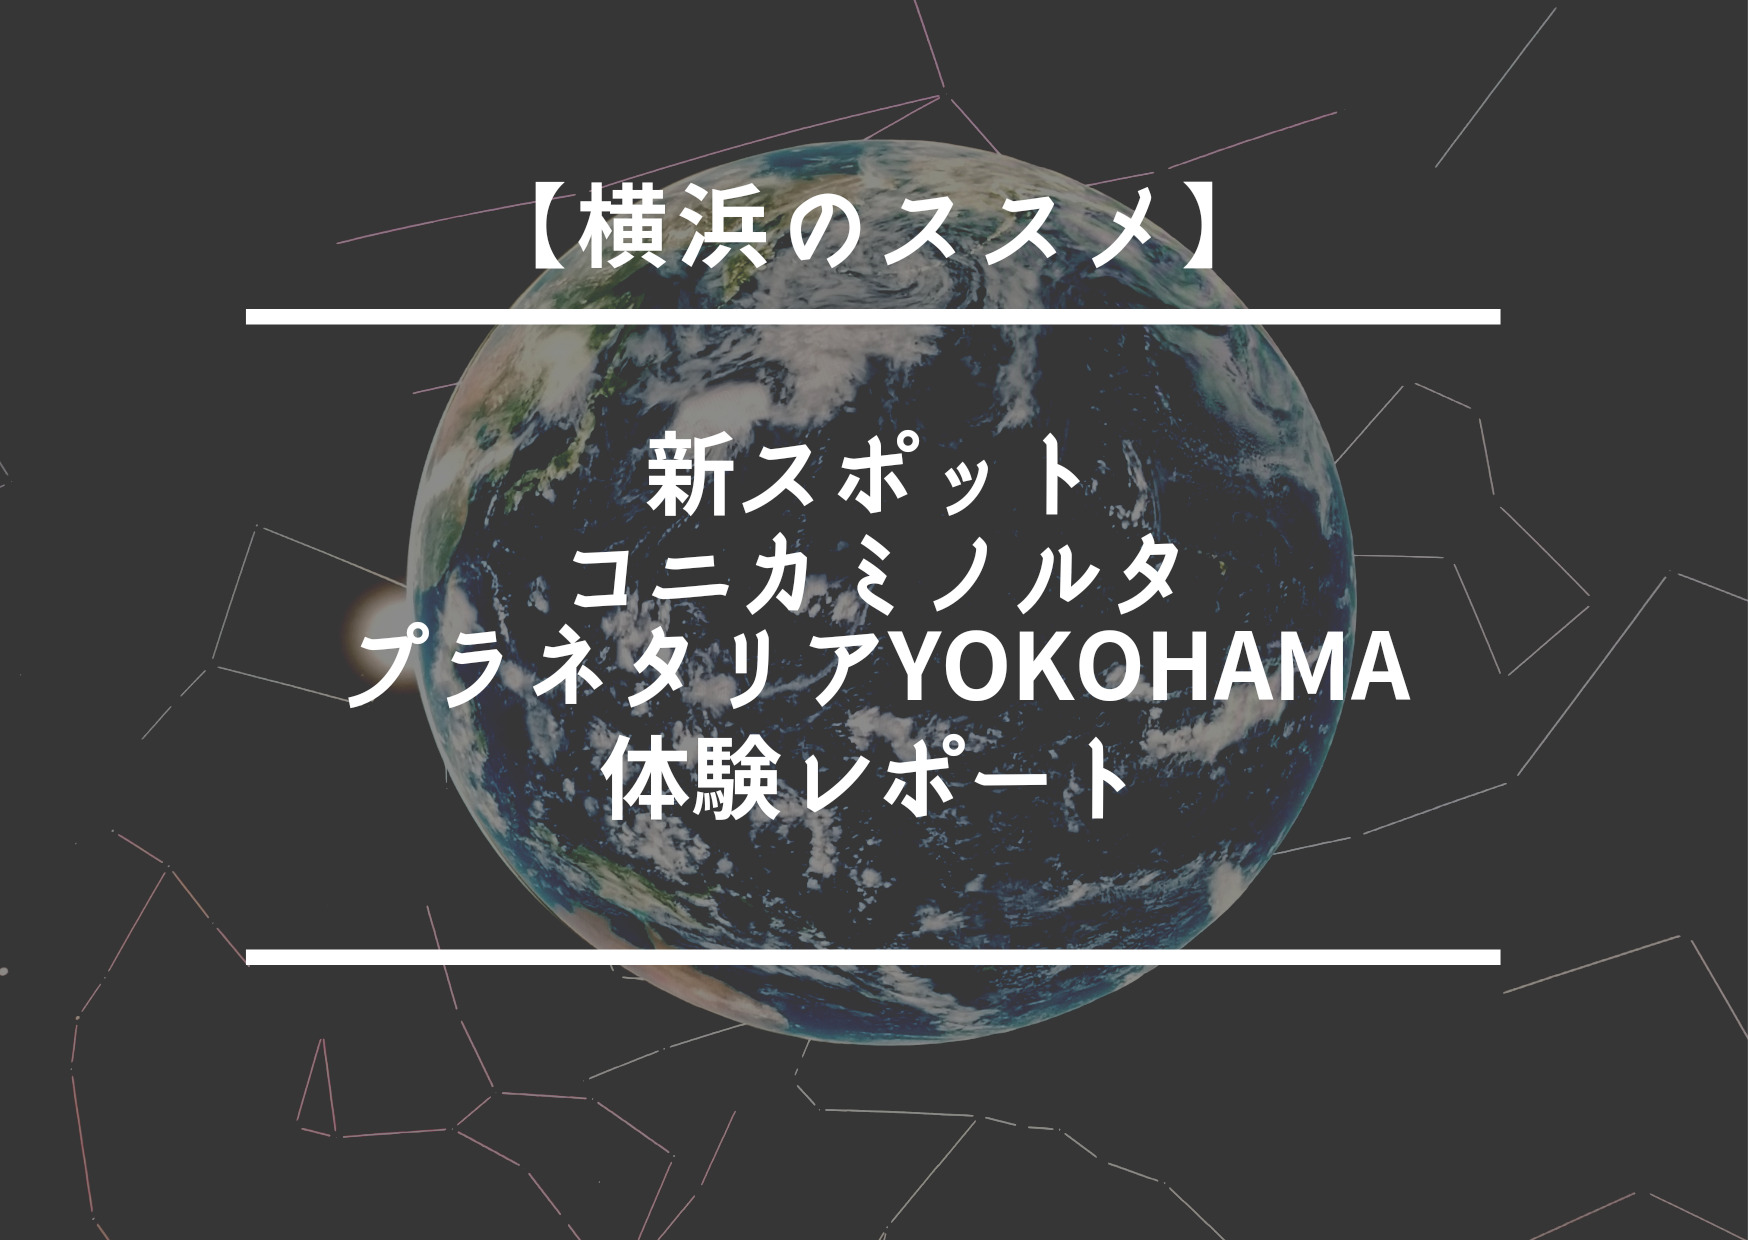 【横浜のススメ】新スポット「コニカミノルタプラネタリアYOKOHAMA」体験レポート